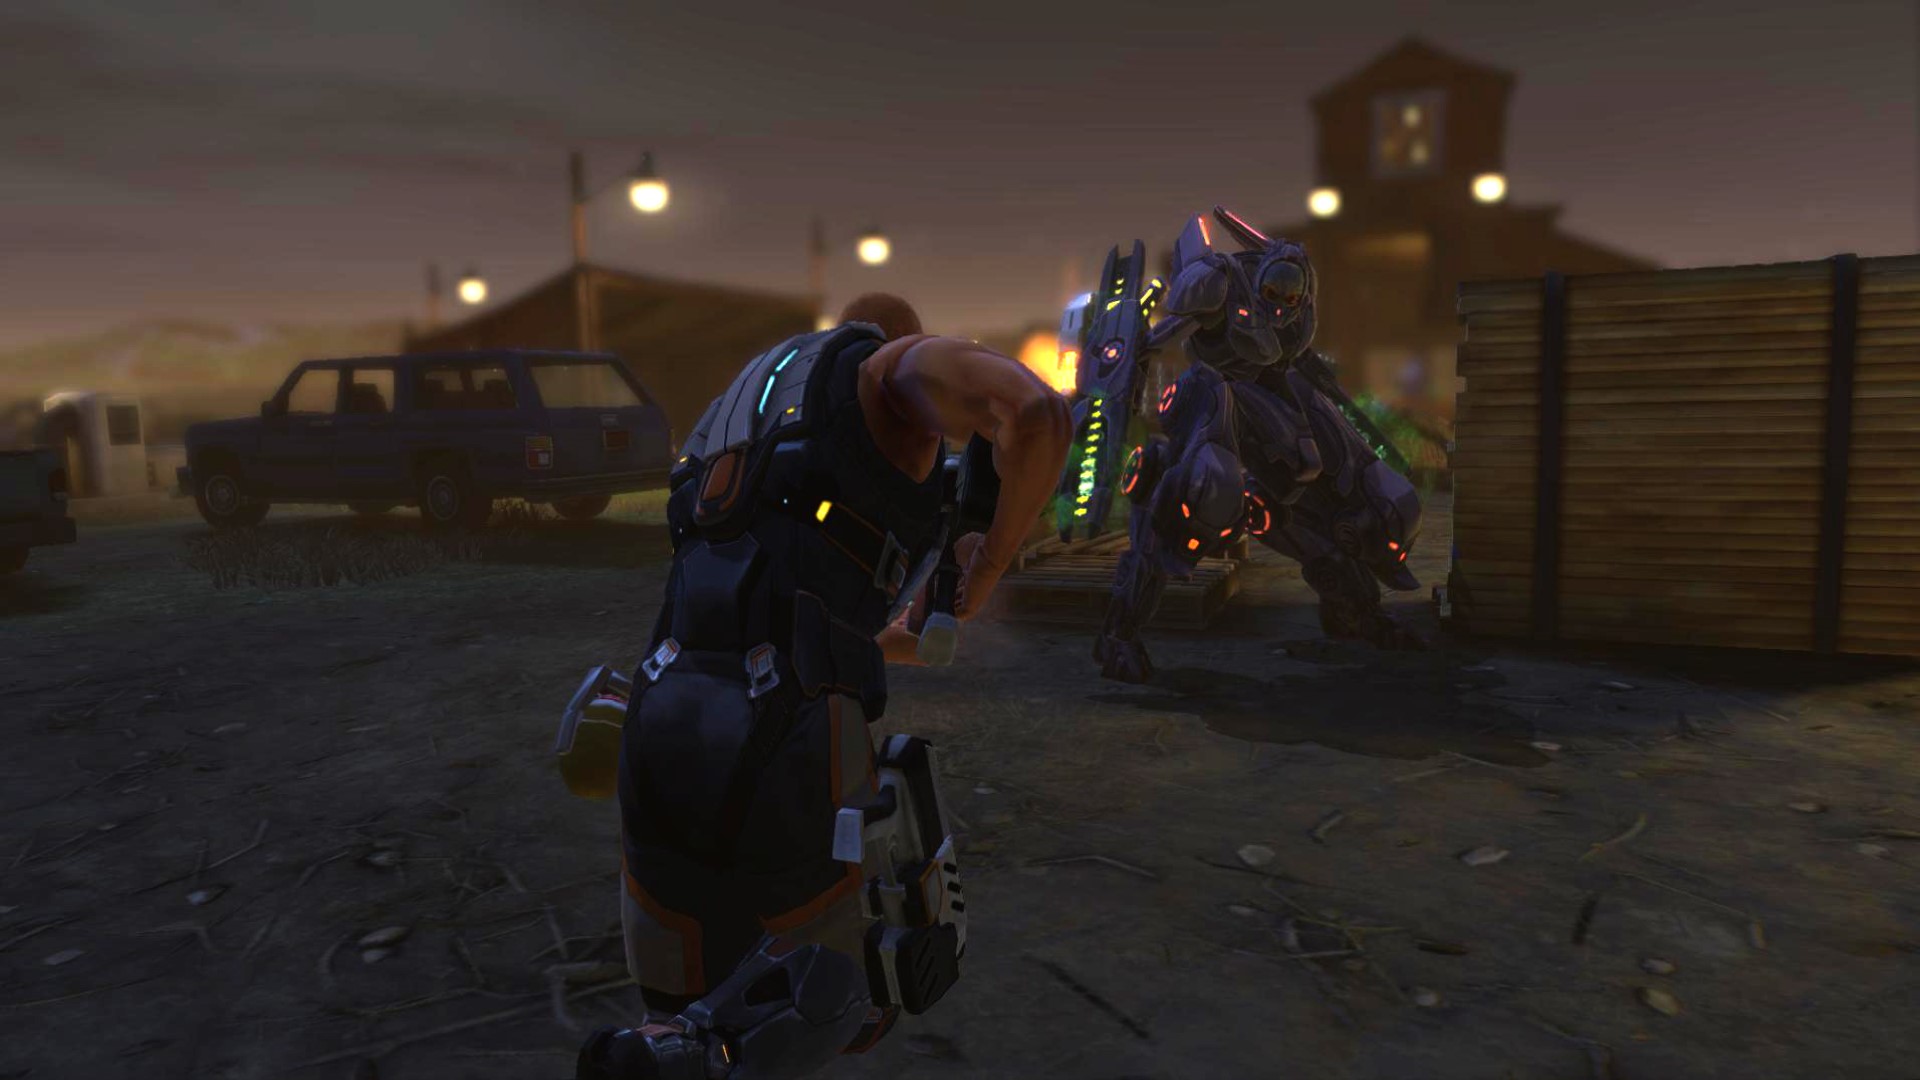 เกมกลยุทธ์มือถือที่ดีที่สุด: XCOM: ศัตรูภายใน ภาพแสดงให้เห็นว่าคนสองคนในเกราะแห่งอนาคตถือปืน